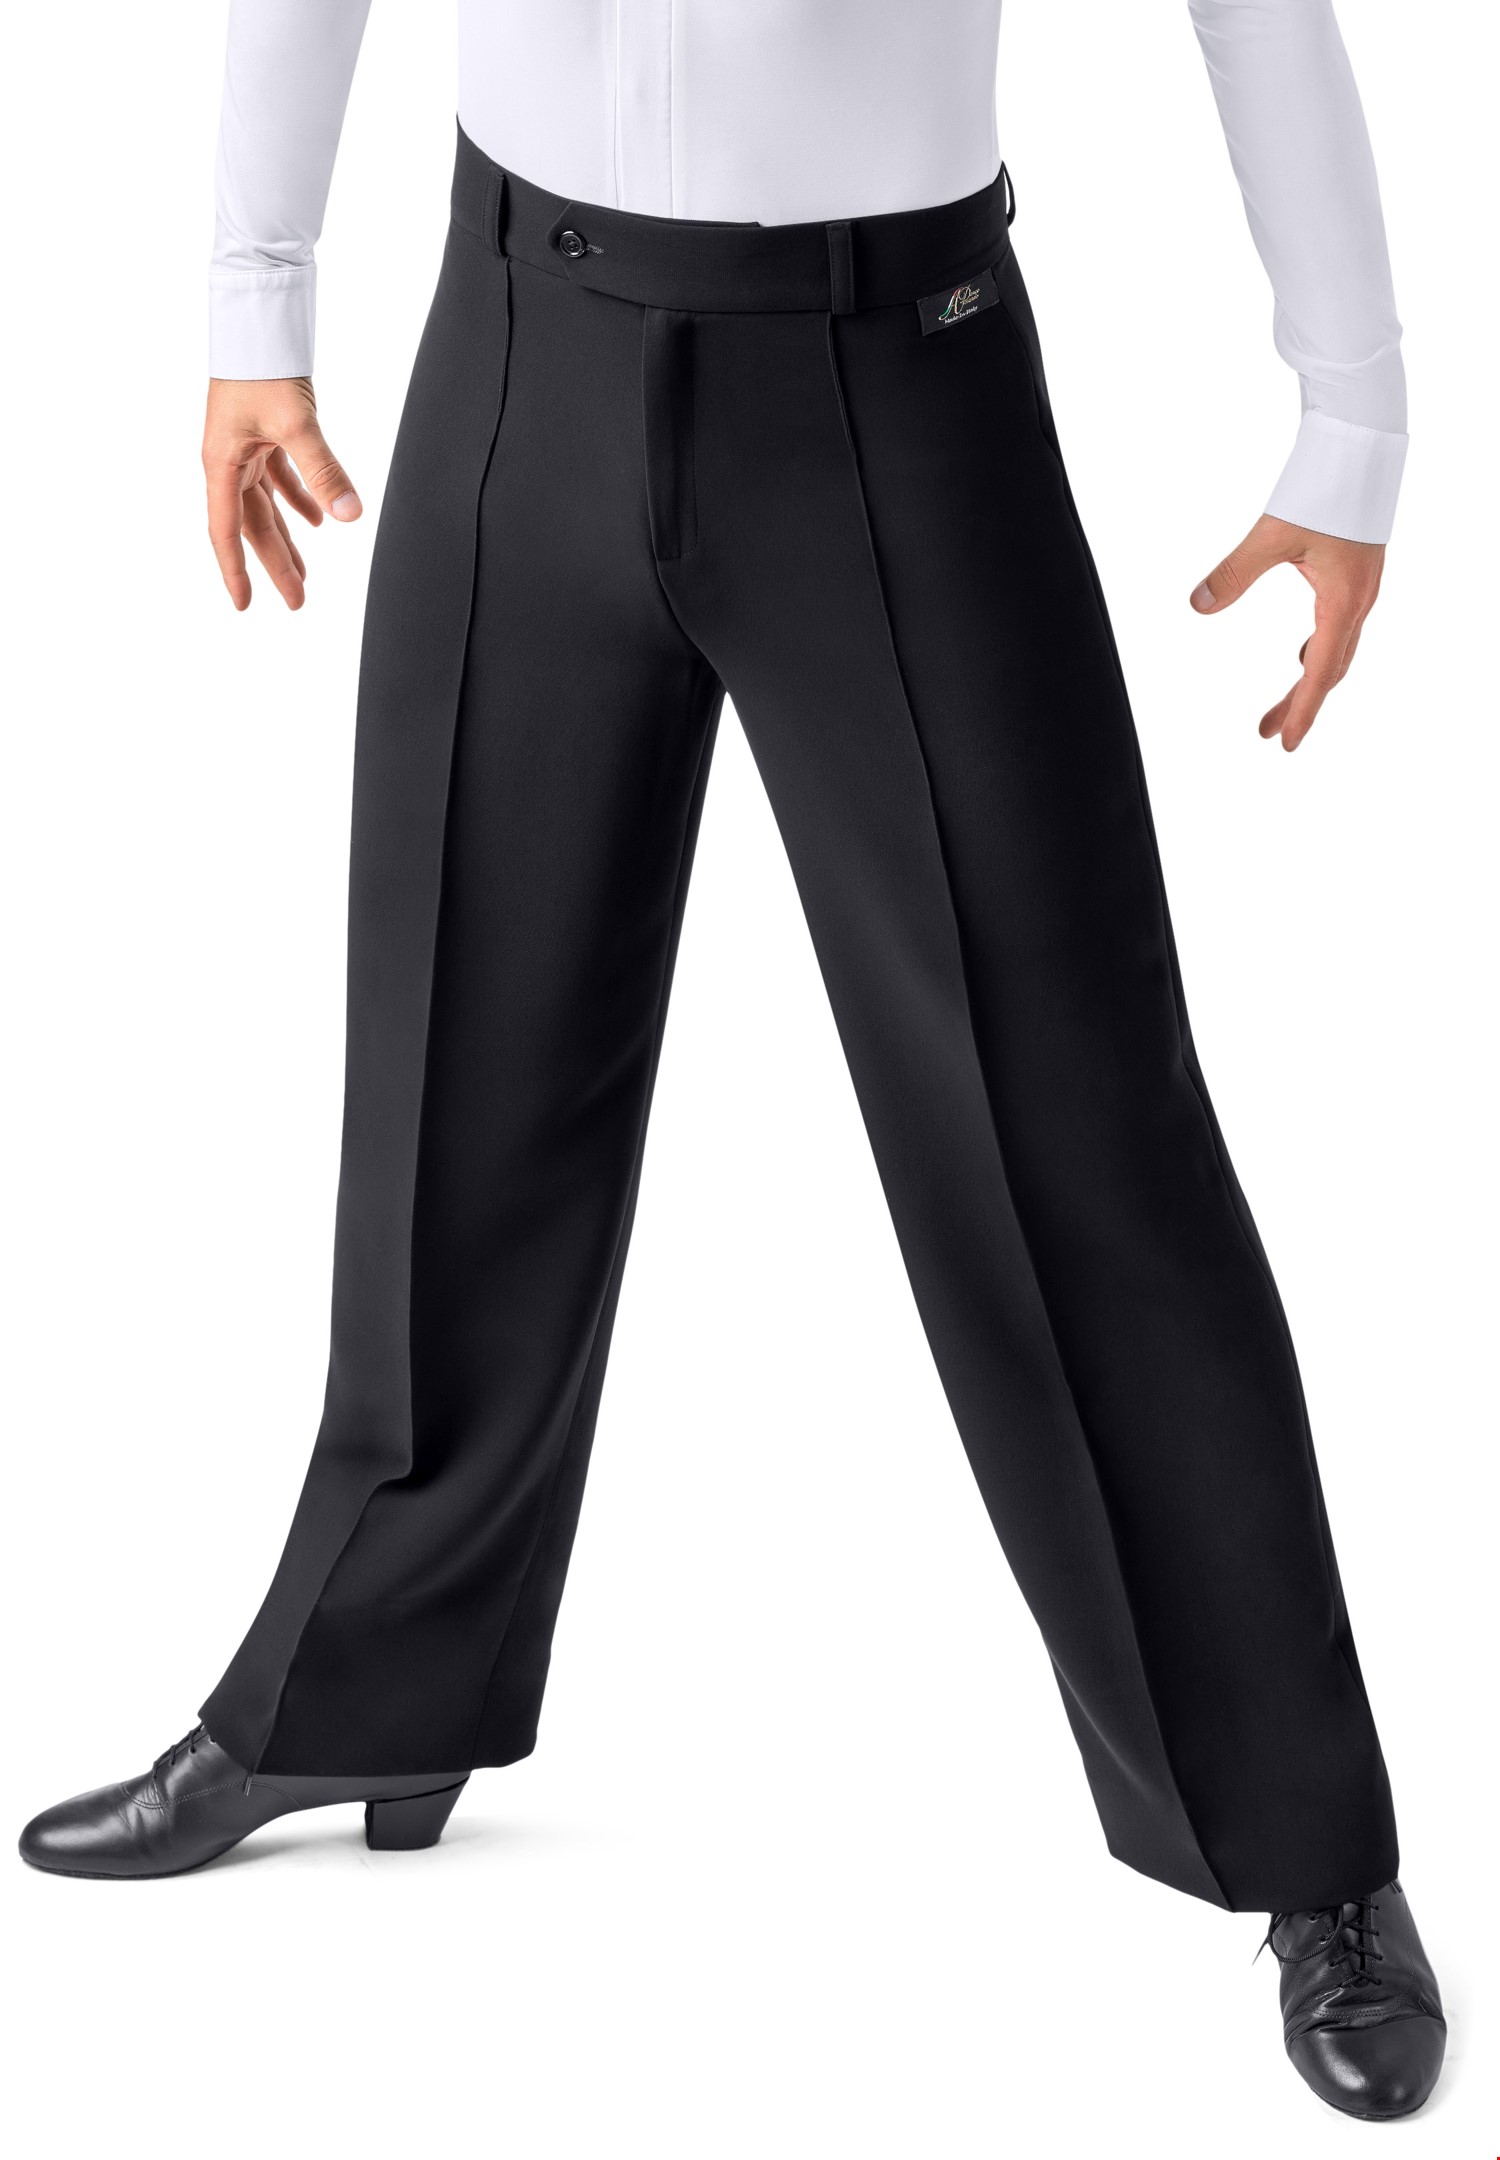 Tail Suit High Waist Dance Pants